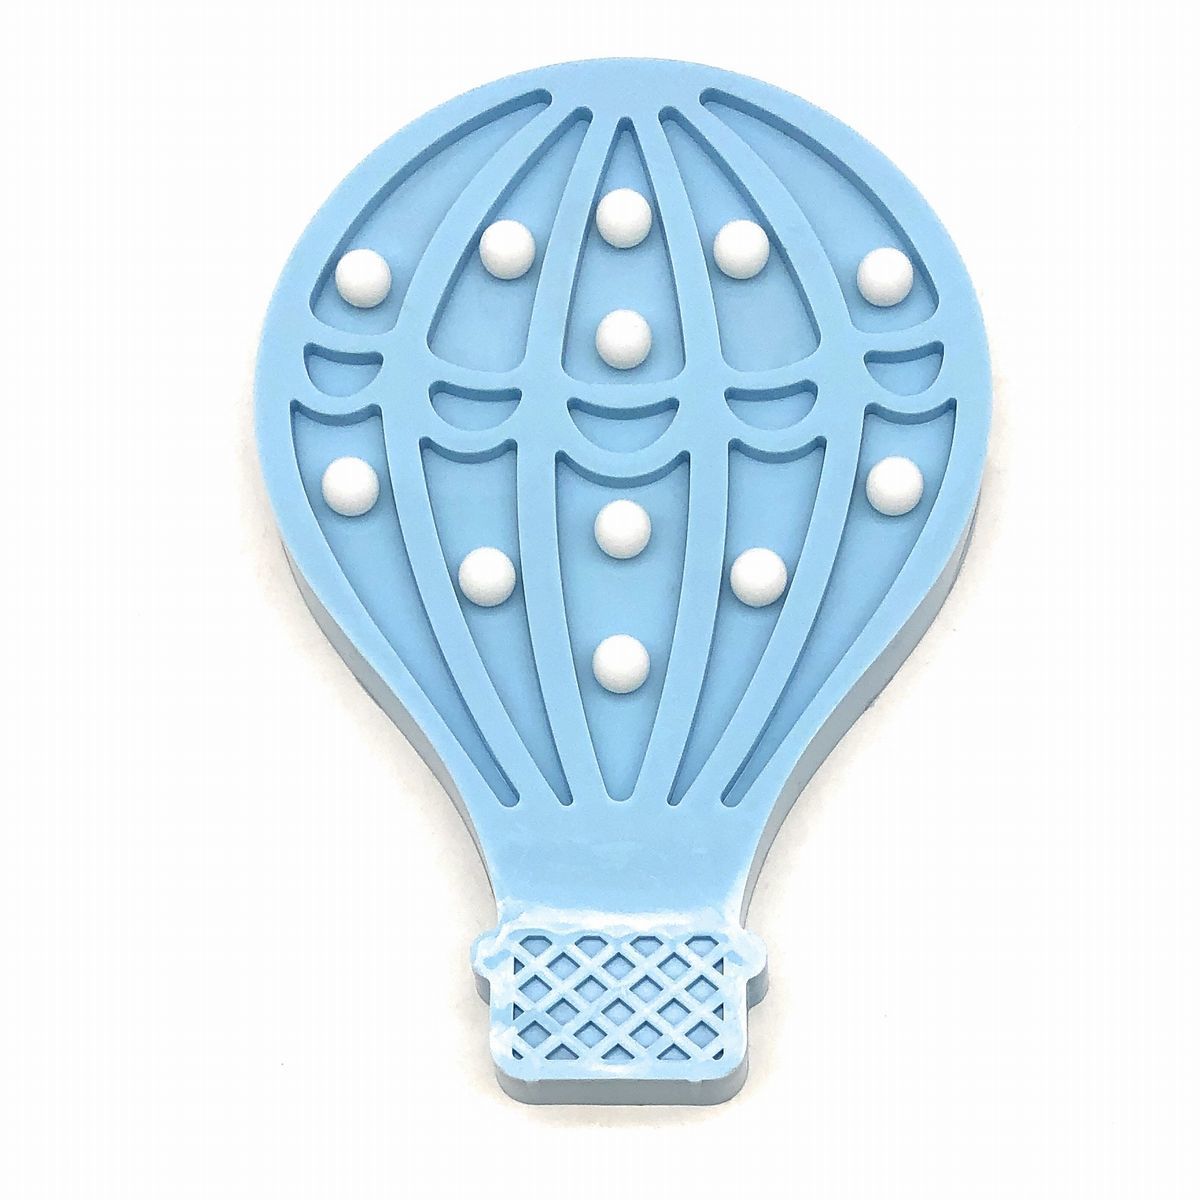 풍선을 모티브로 한 특가 벽걸이 오브제, 파스텔 색상, LED 조명, 배터리 작동식(파란색), 핸드메이드 아이템, 내부, 잡화, 장식, 물체